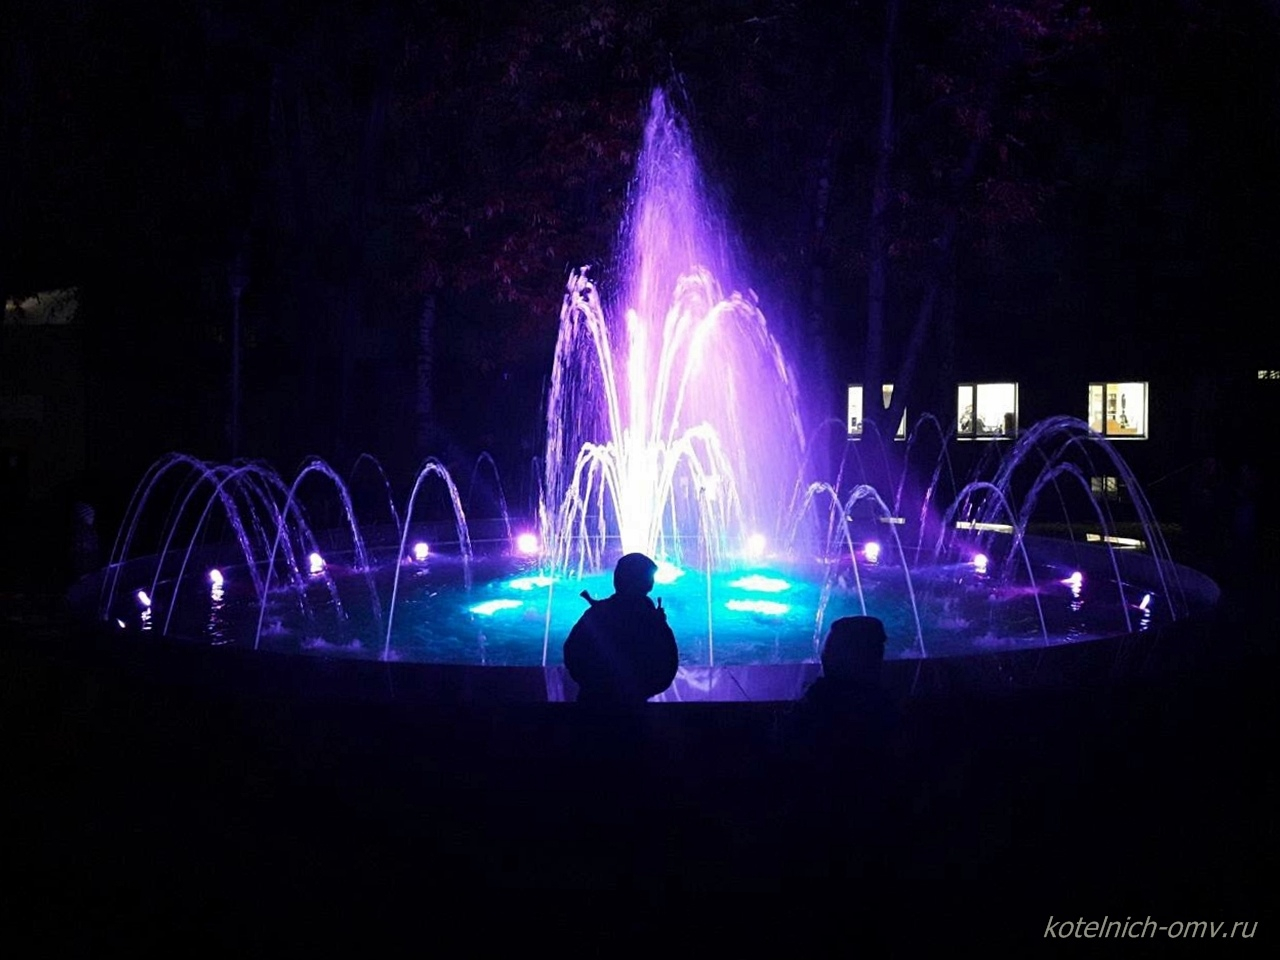 В Котельниче запустили световой фонтан стоимостью два миллиона рублей